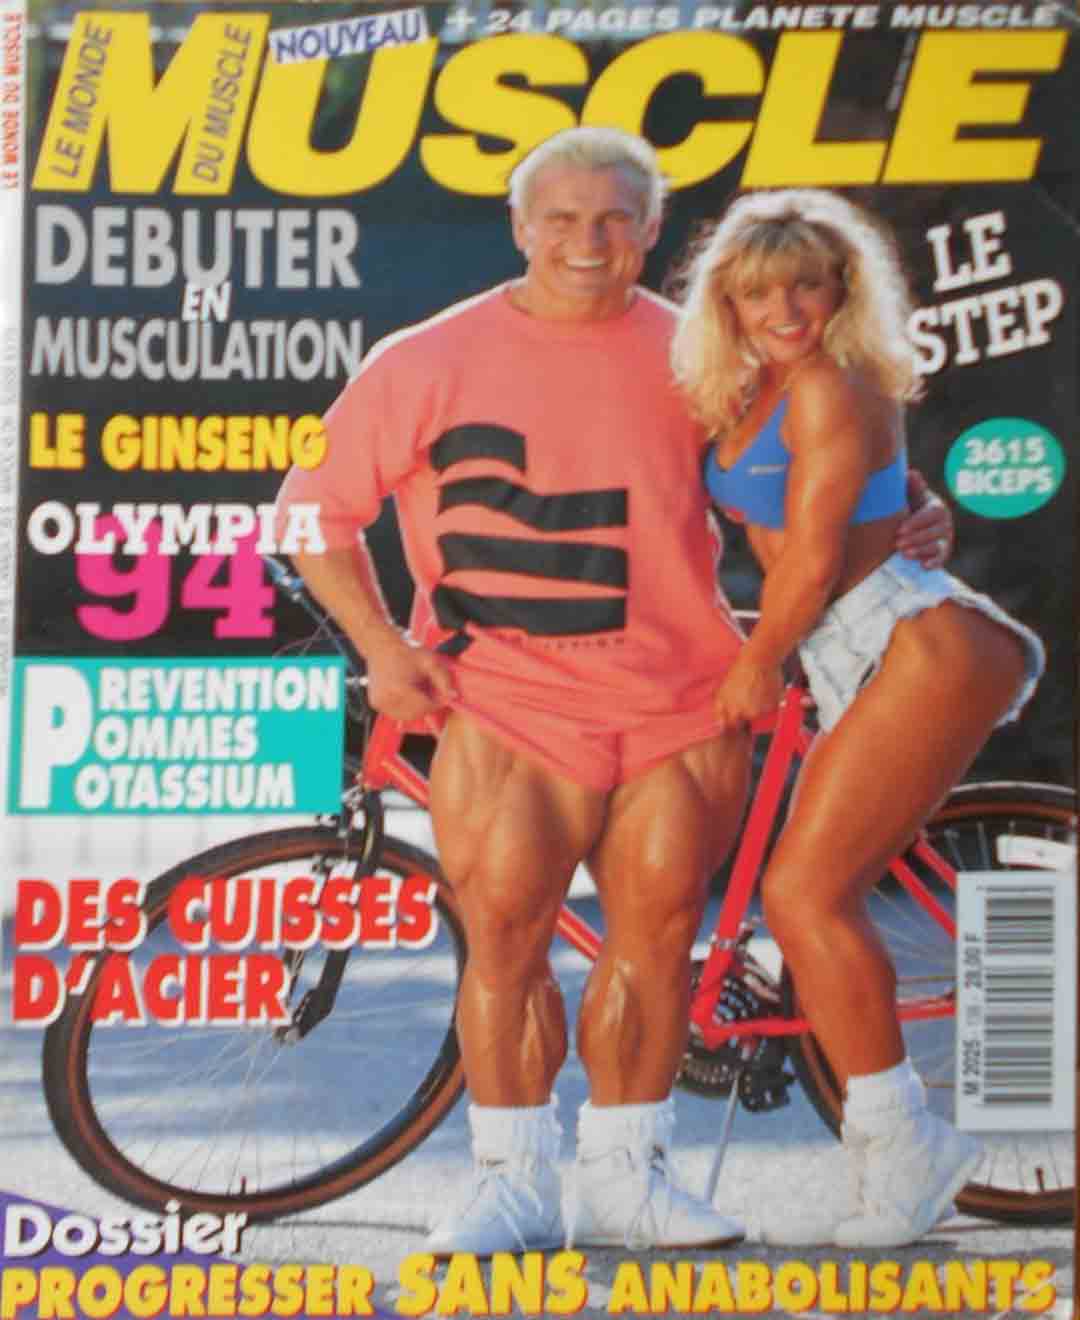 Le Monde du Muscle # 138 magazine back issue Le Monde du Muscle magizine back copy 